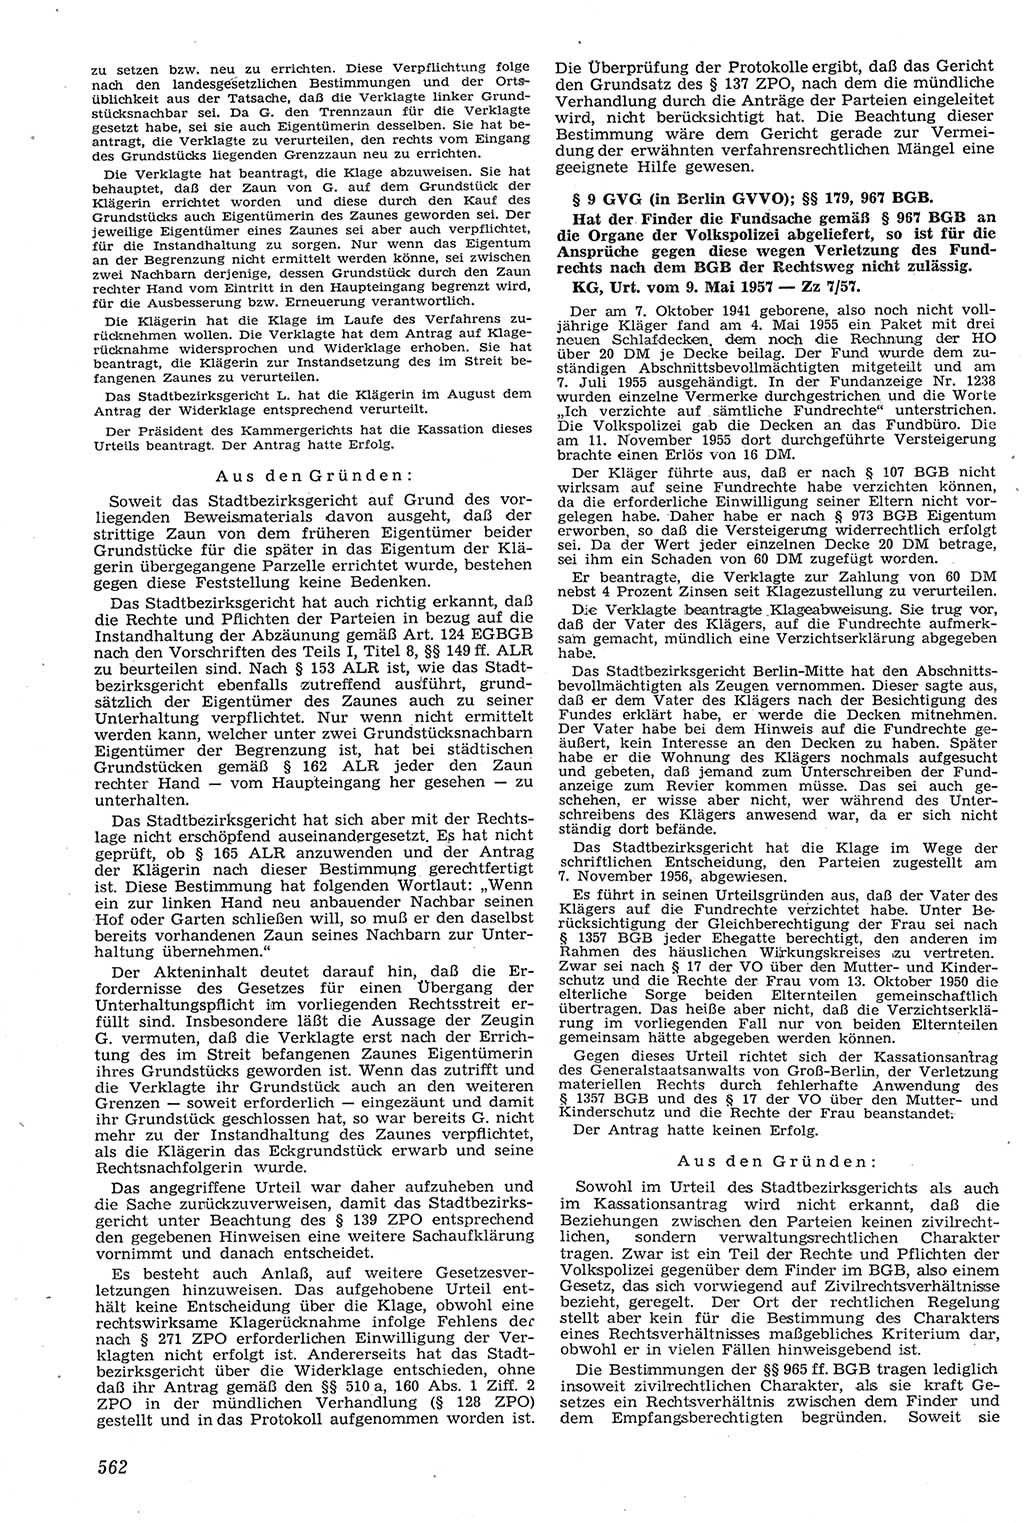 Neue Justiz (NJ), Zeitschrift für Recht und Rechtswissenschaft [Deutsche Demokratische Republik (DDR)], 11. Jahrgang 1957, Seite 562 (NJ DDR 1957, S. 562)